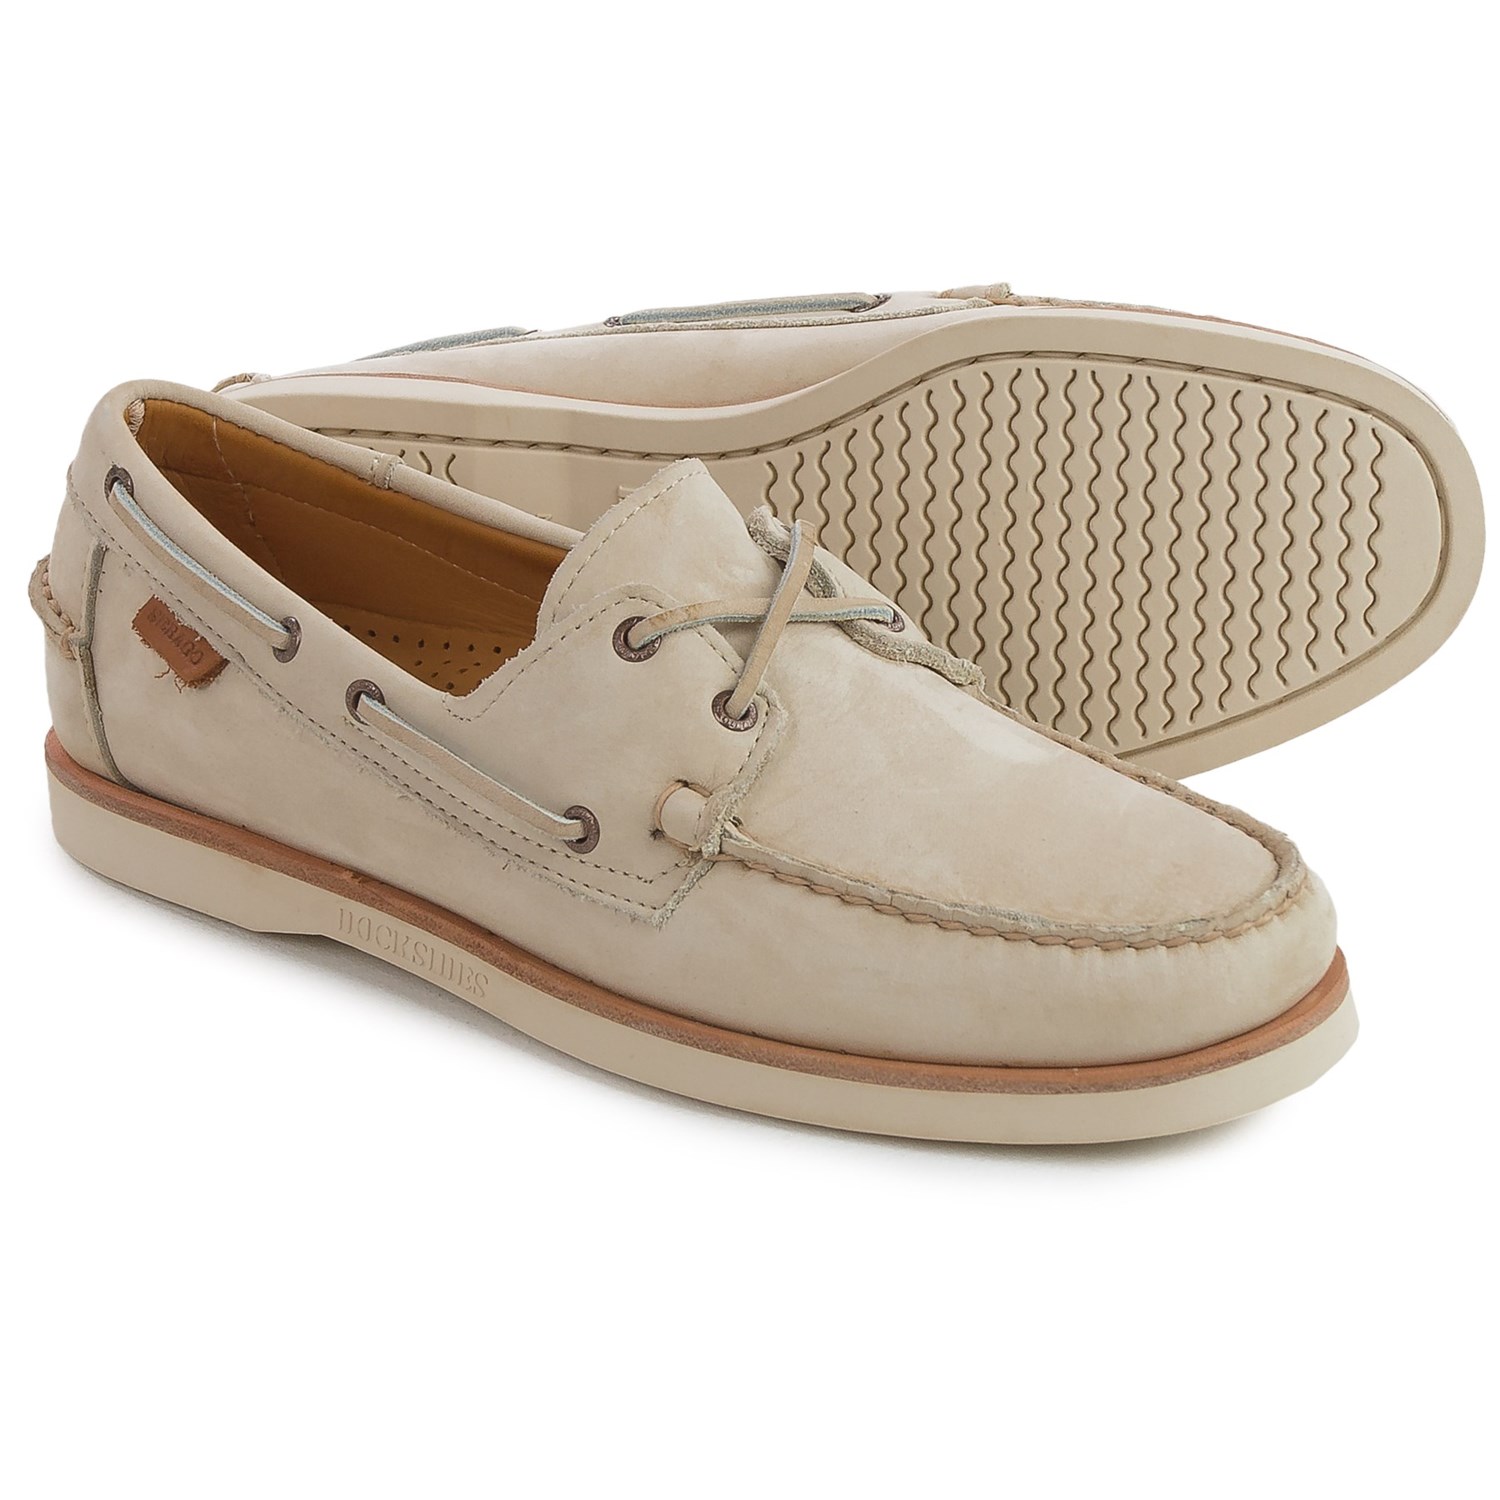 Sebago Crest Docksides® Boat Shoes (For Men) - Save 50%